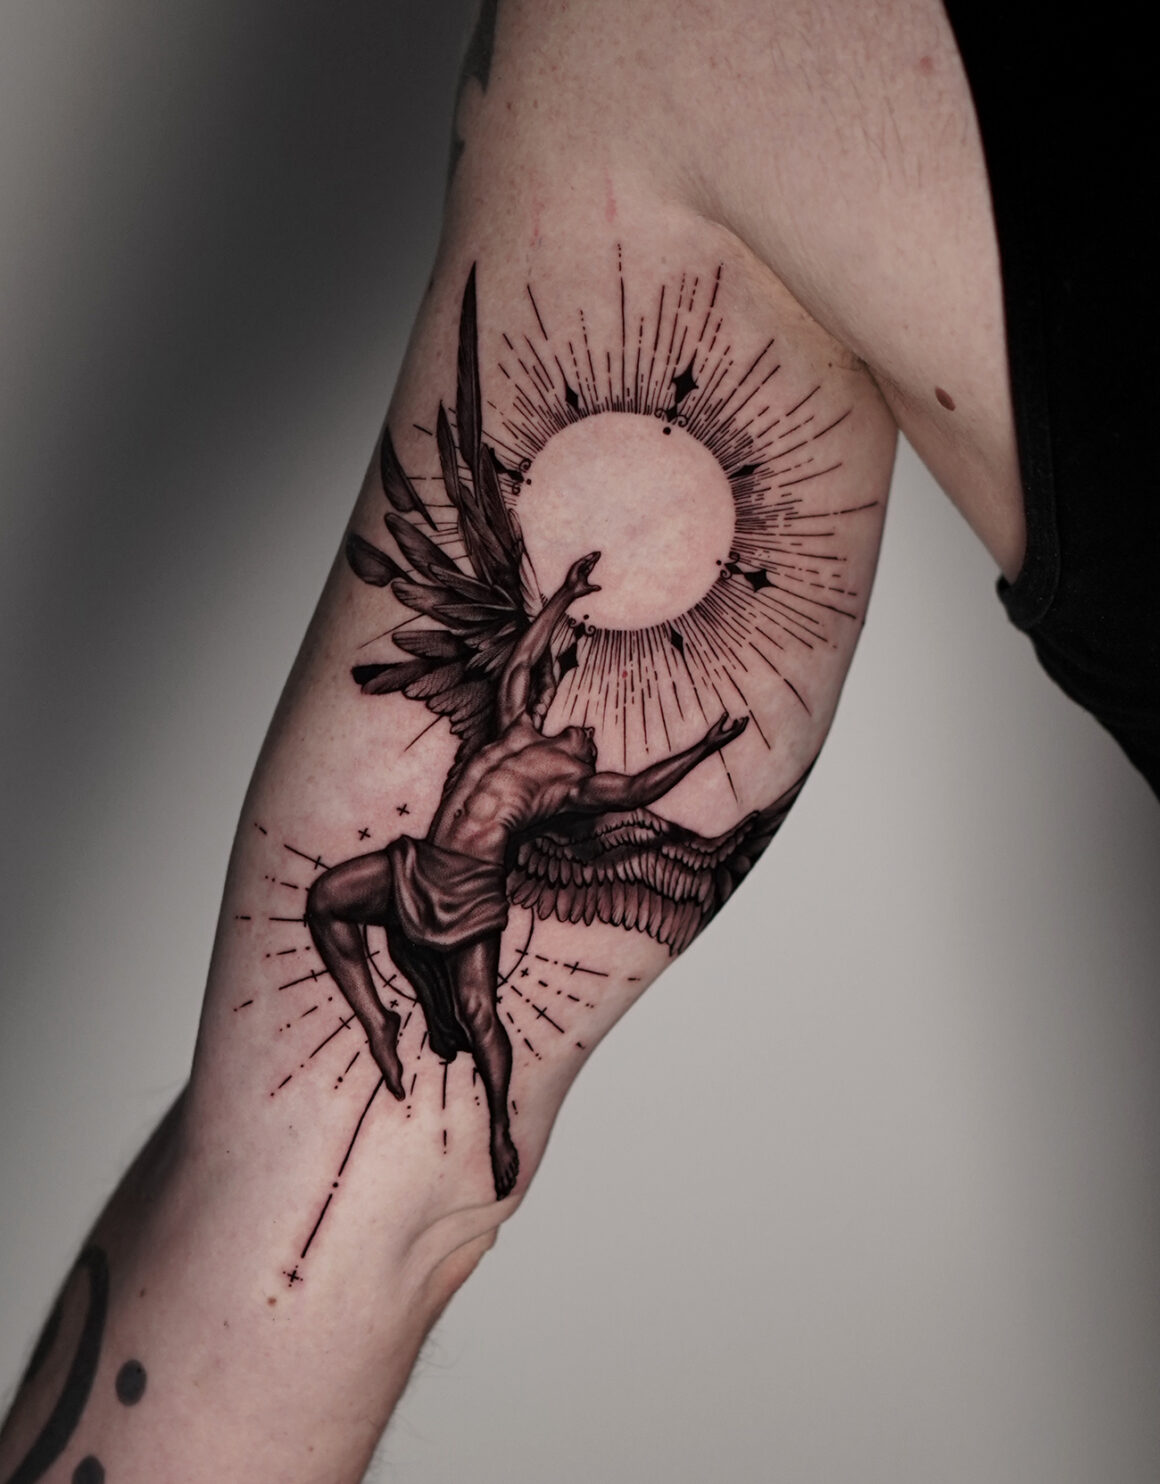 Tattoo by Sebastian, German Skull Tattoo, @skulltattoosbadvilbel